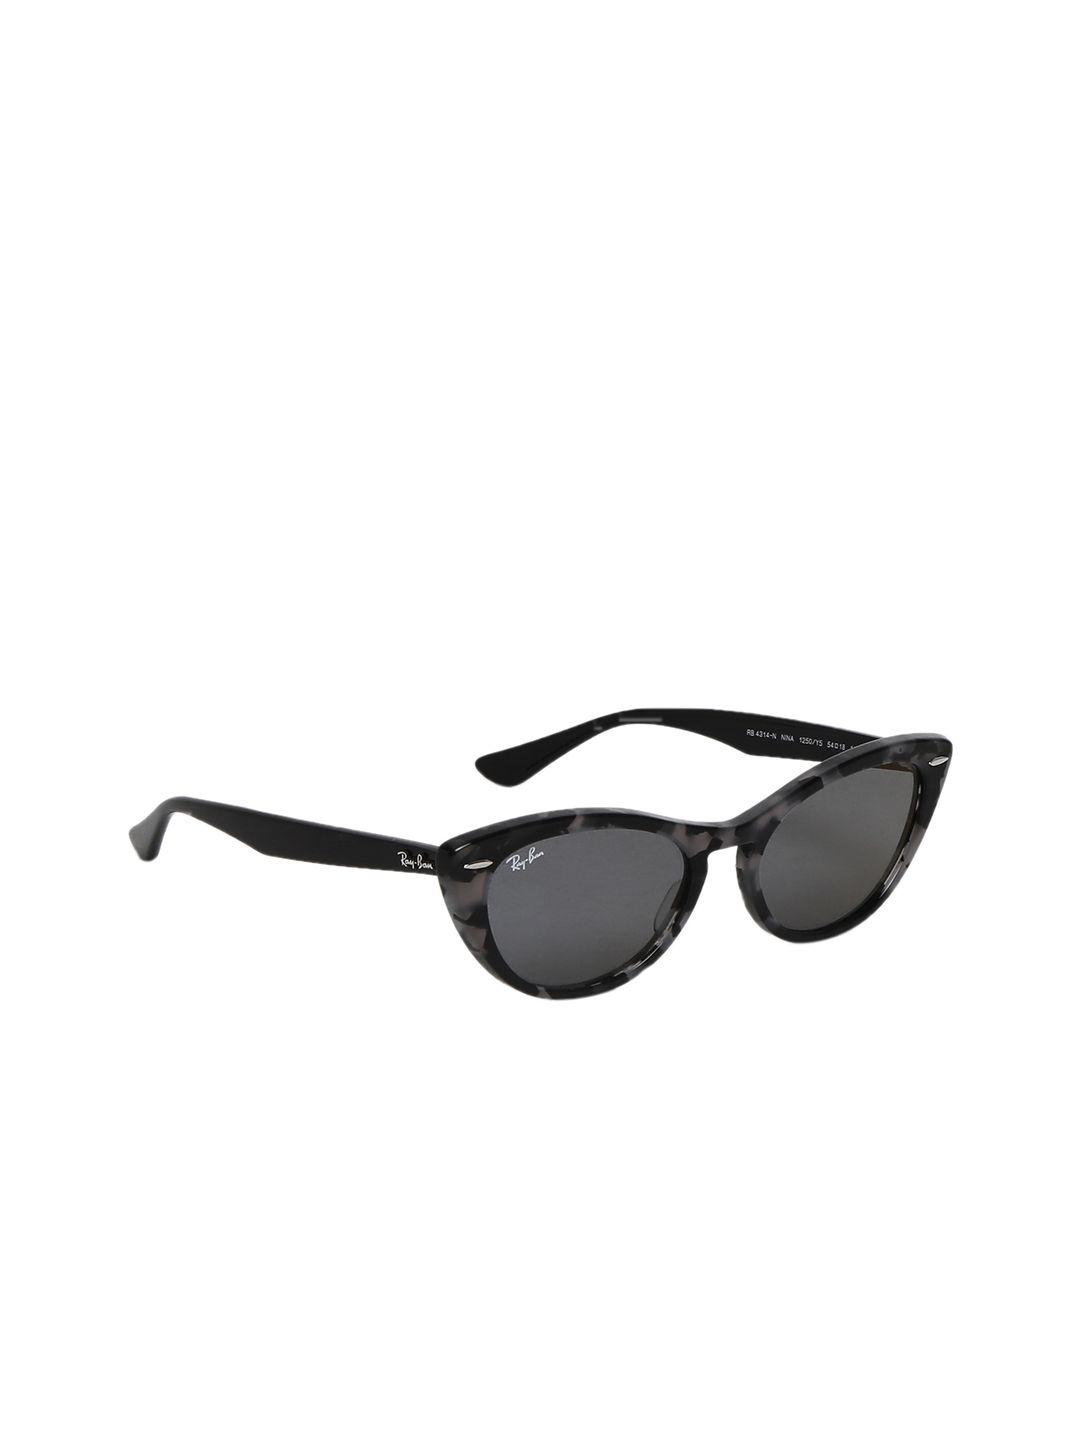 ray-ban-women-cateye-sunglasses-0rb4314n1250y554